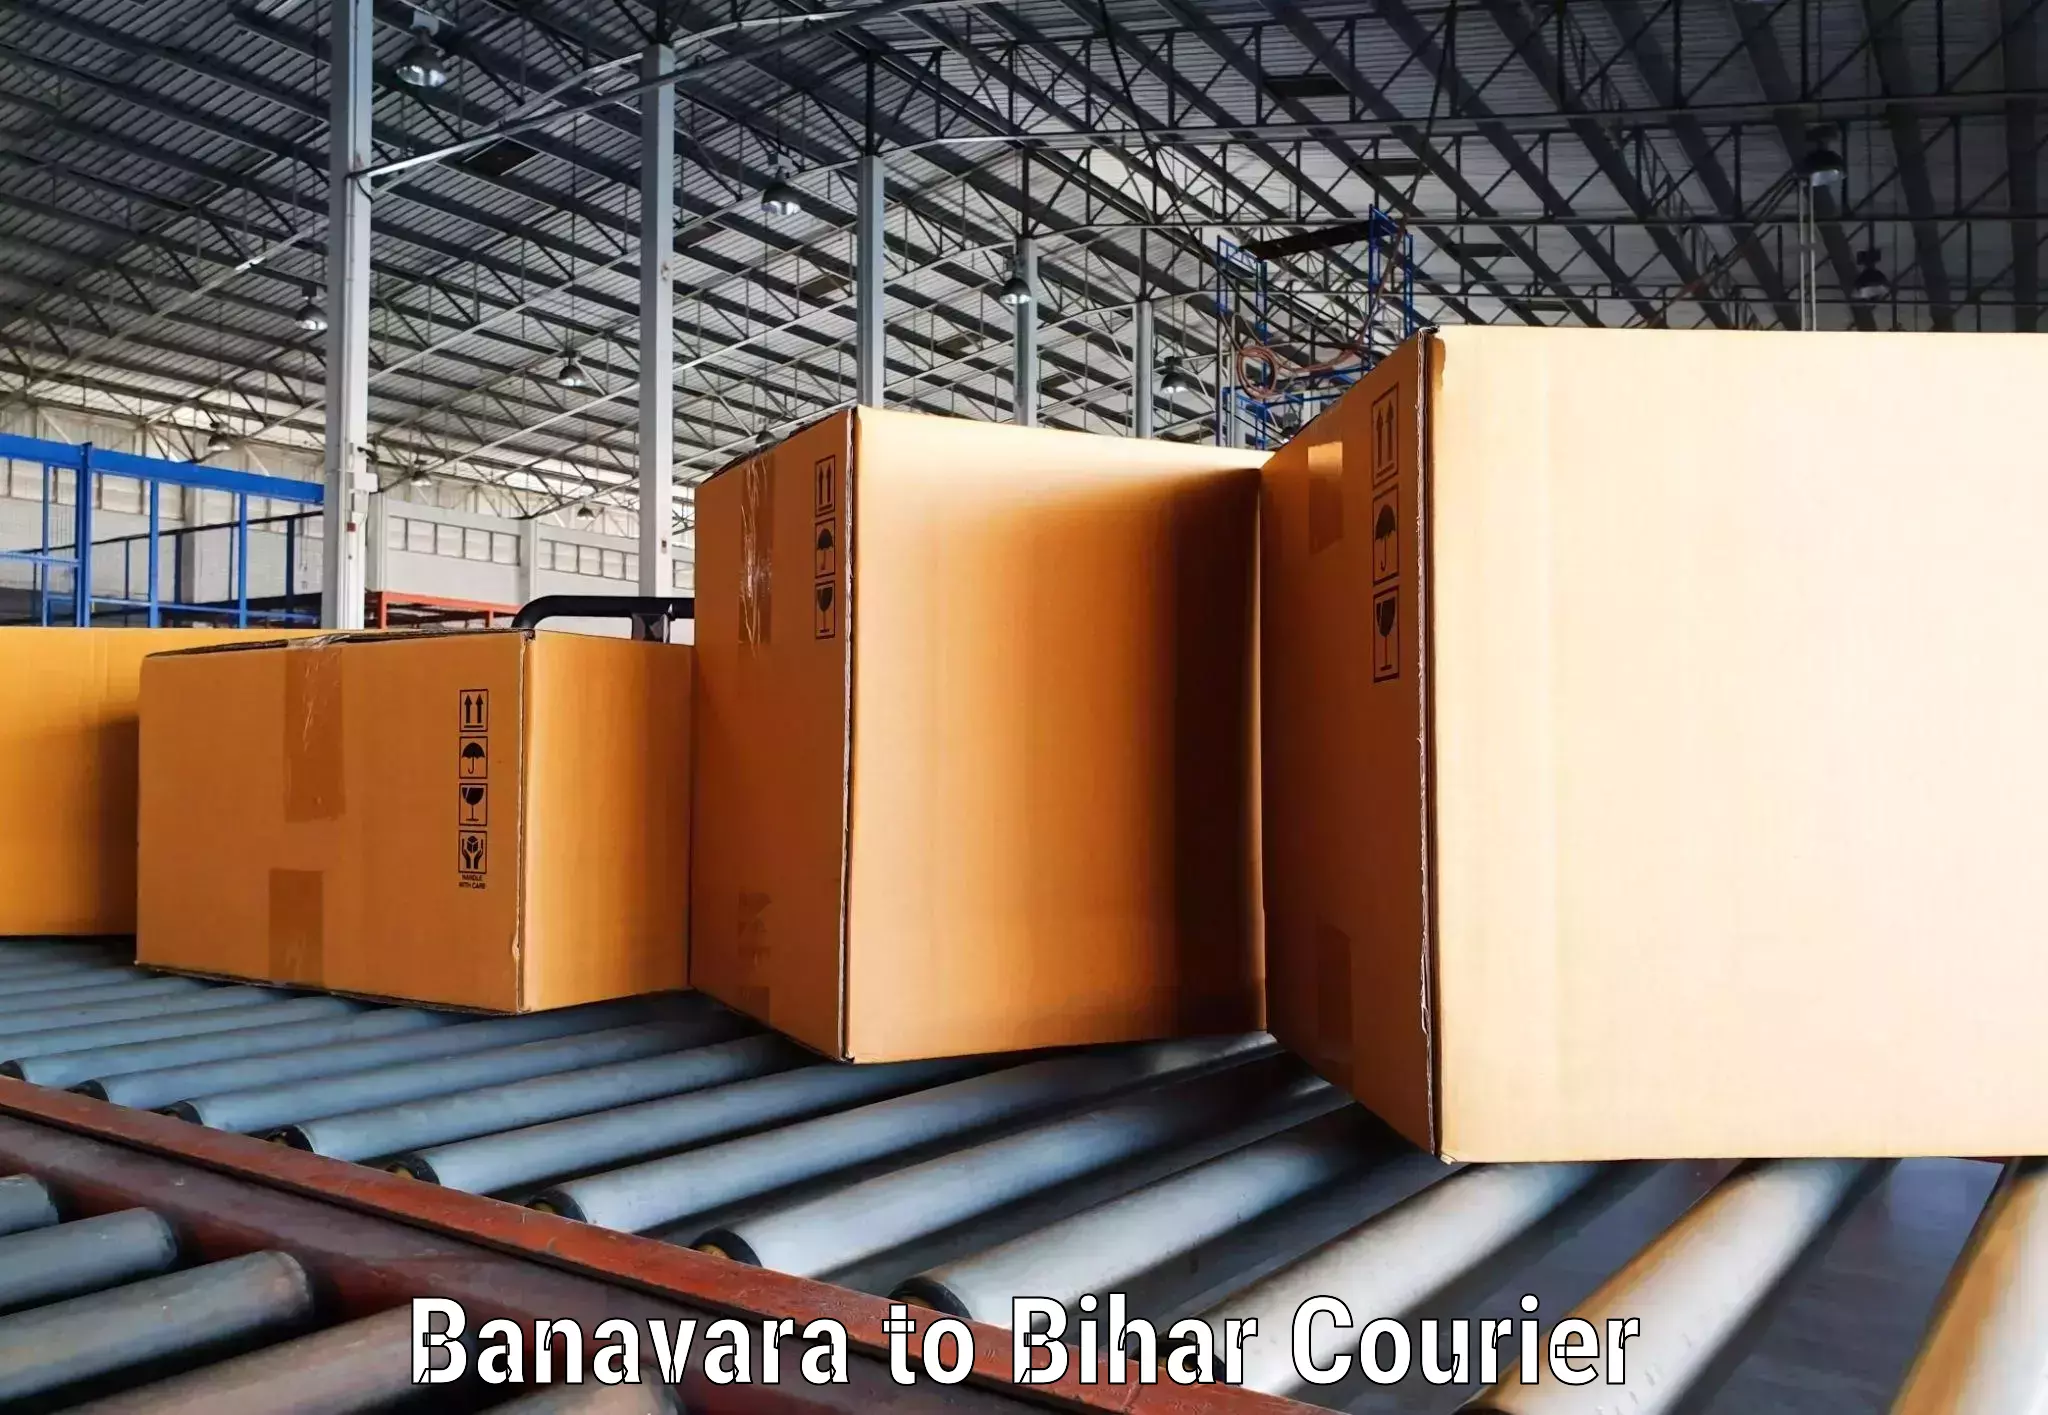 Nationwide shipping services Banavara to Dhaka